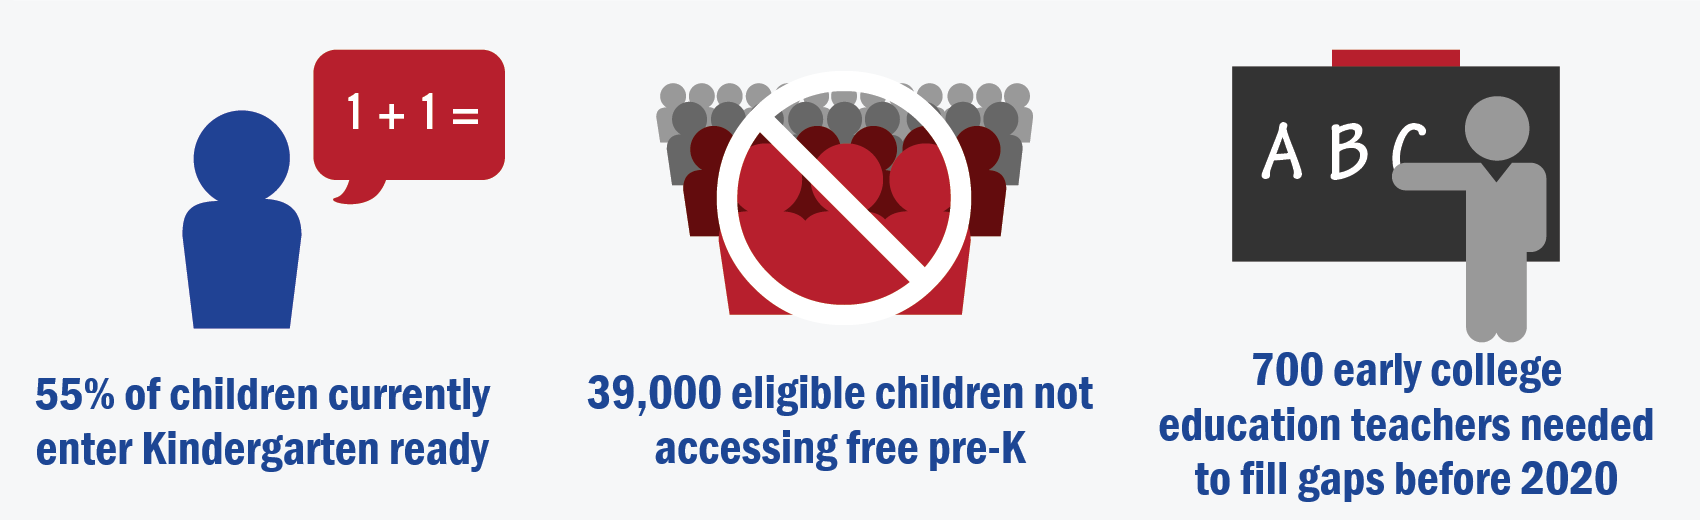 55% of children currently enter Kindergarten ready